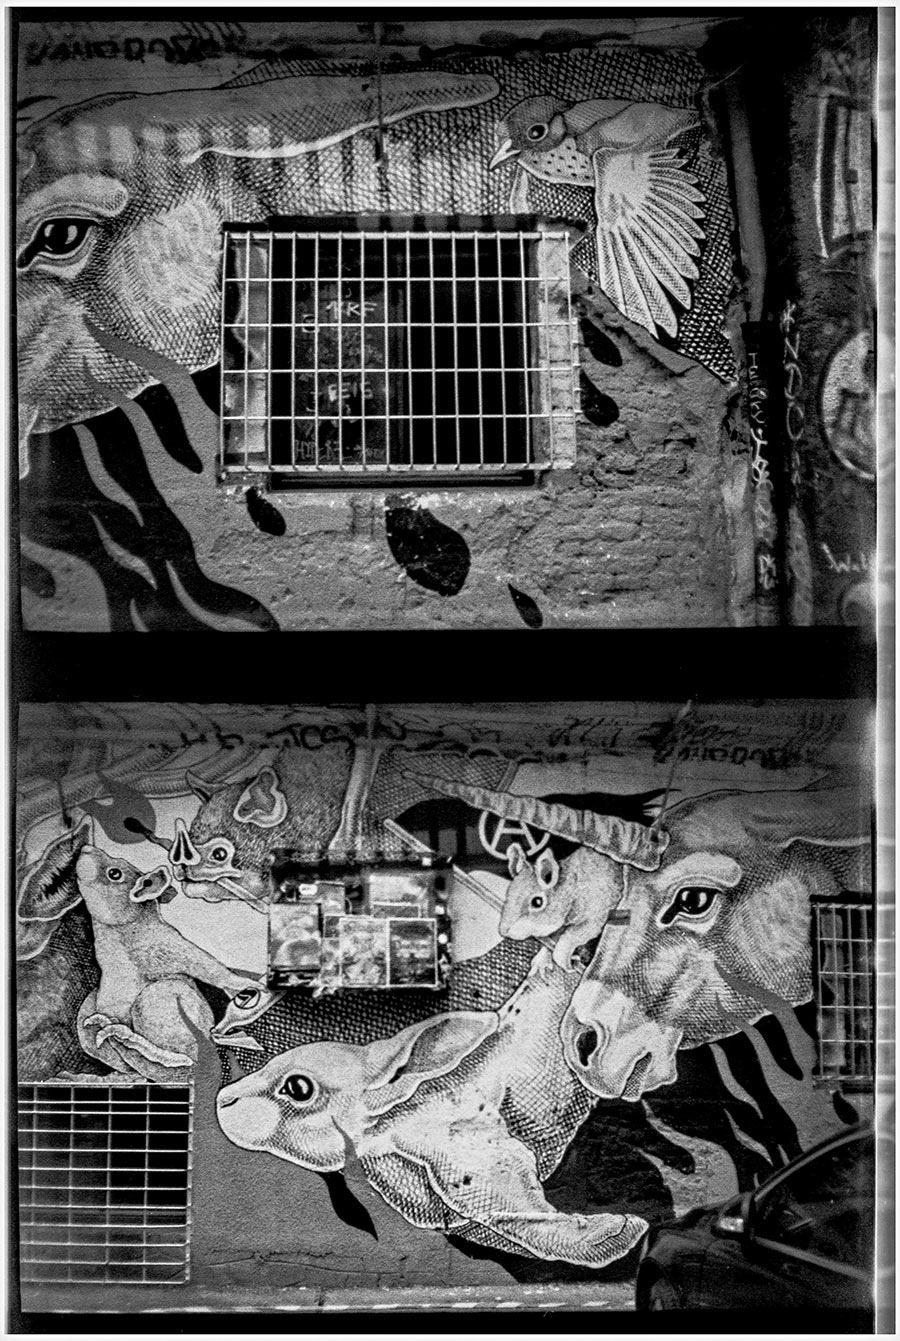 ljubljana3-streetart-metelkova-analogefotografie-antjekroeger